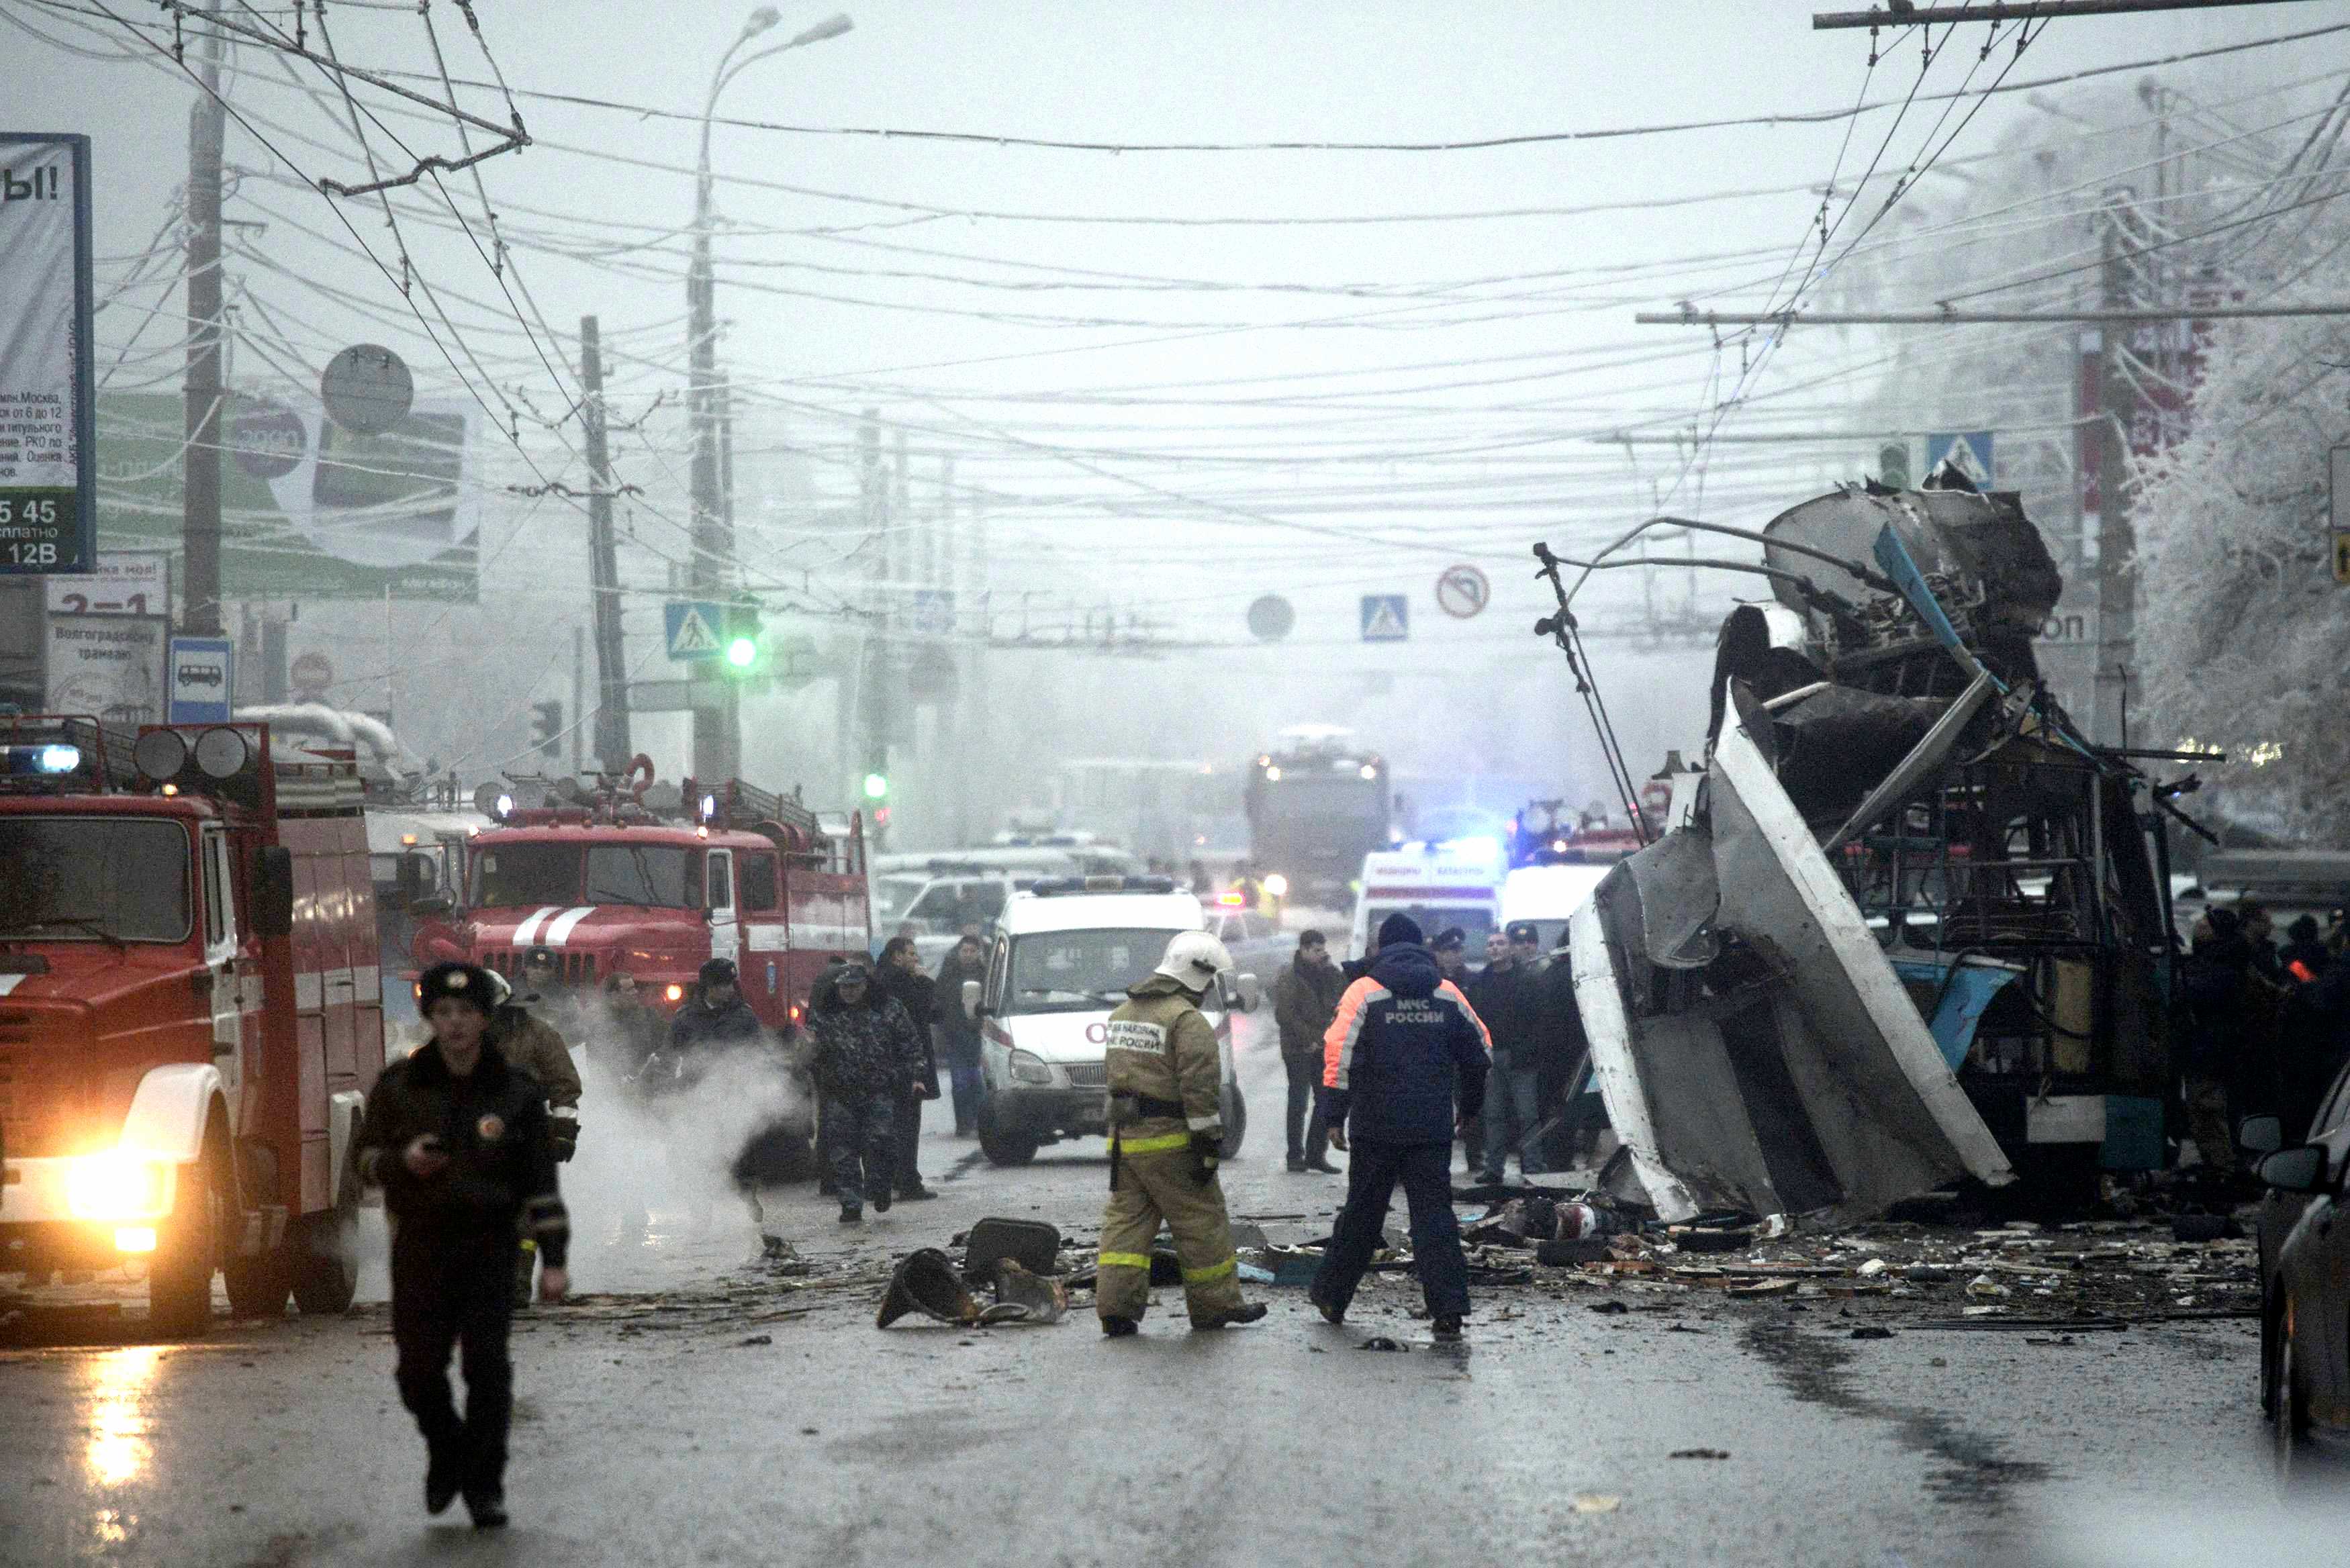 5 декабря 2014 г. Теракт в троллейбусе в Волгограде 30 декабря. Взрыв троллейбуса в Волгограде. Взрыв троллейбуса в Волгограде 30 декабря 2013.